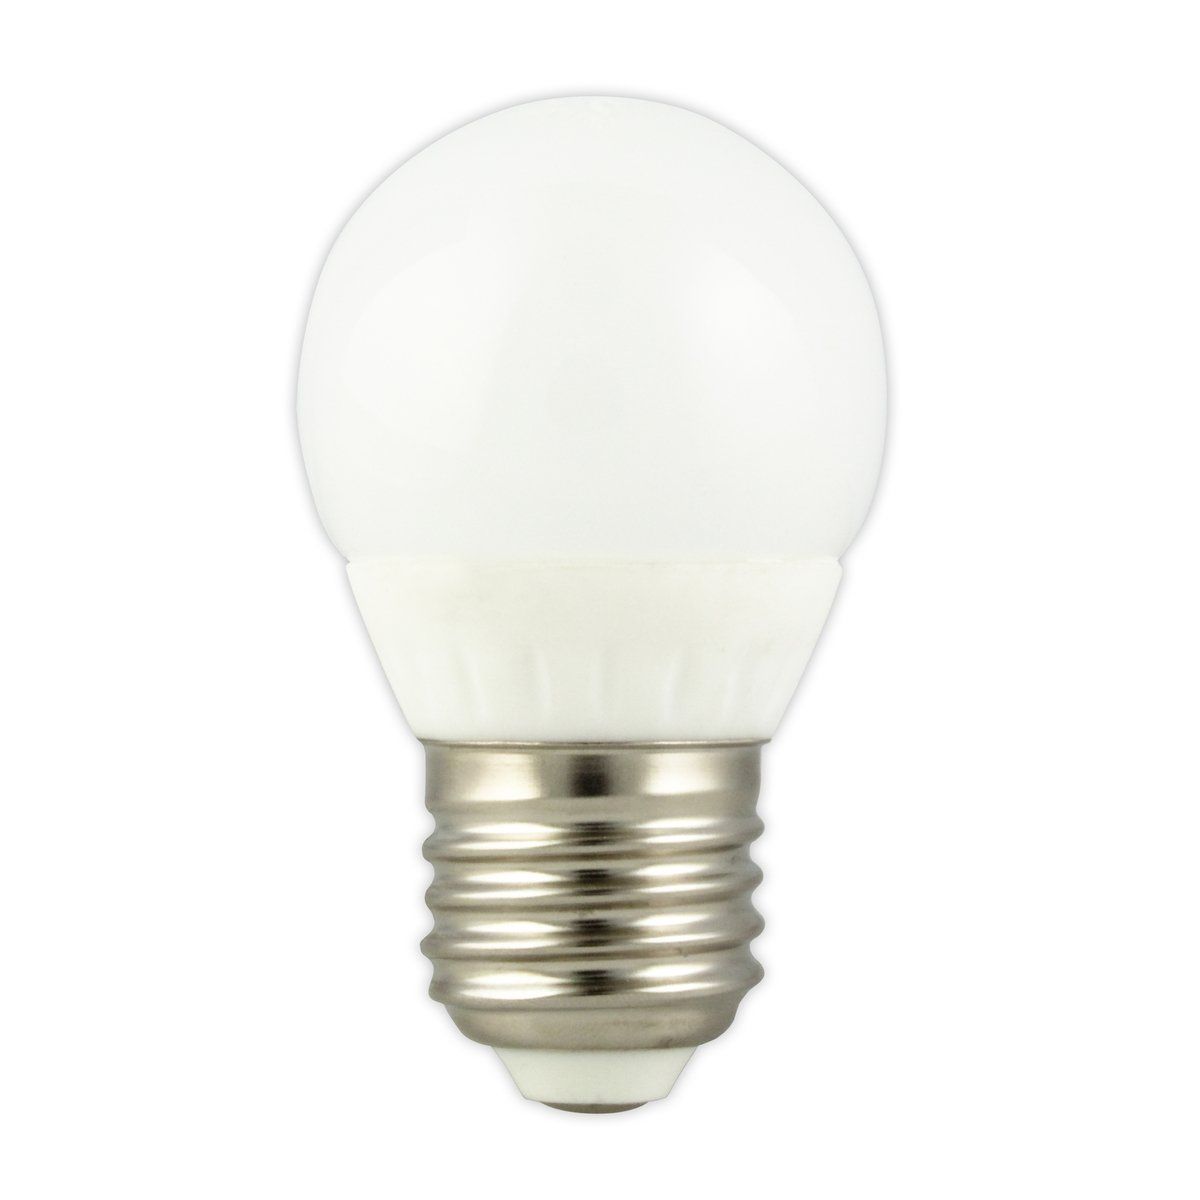 Ampoule LED E27 MINI GLOBE éclairage blanc chaud 4.5W 360 lumens Ø4.5cm